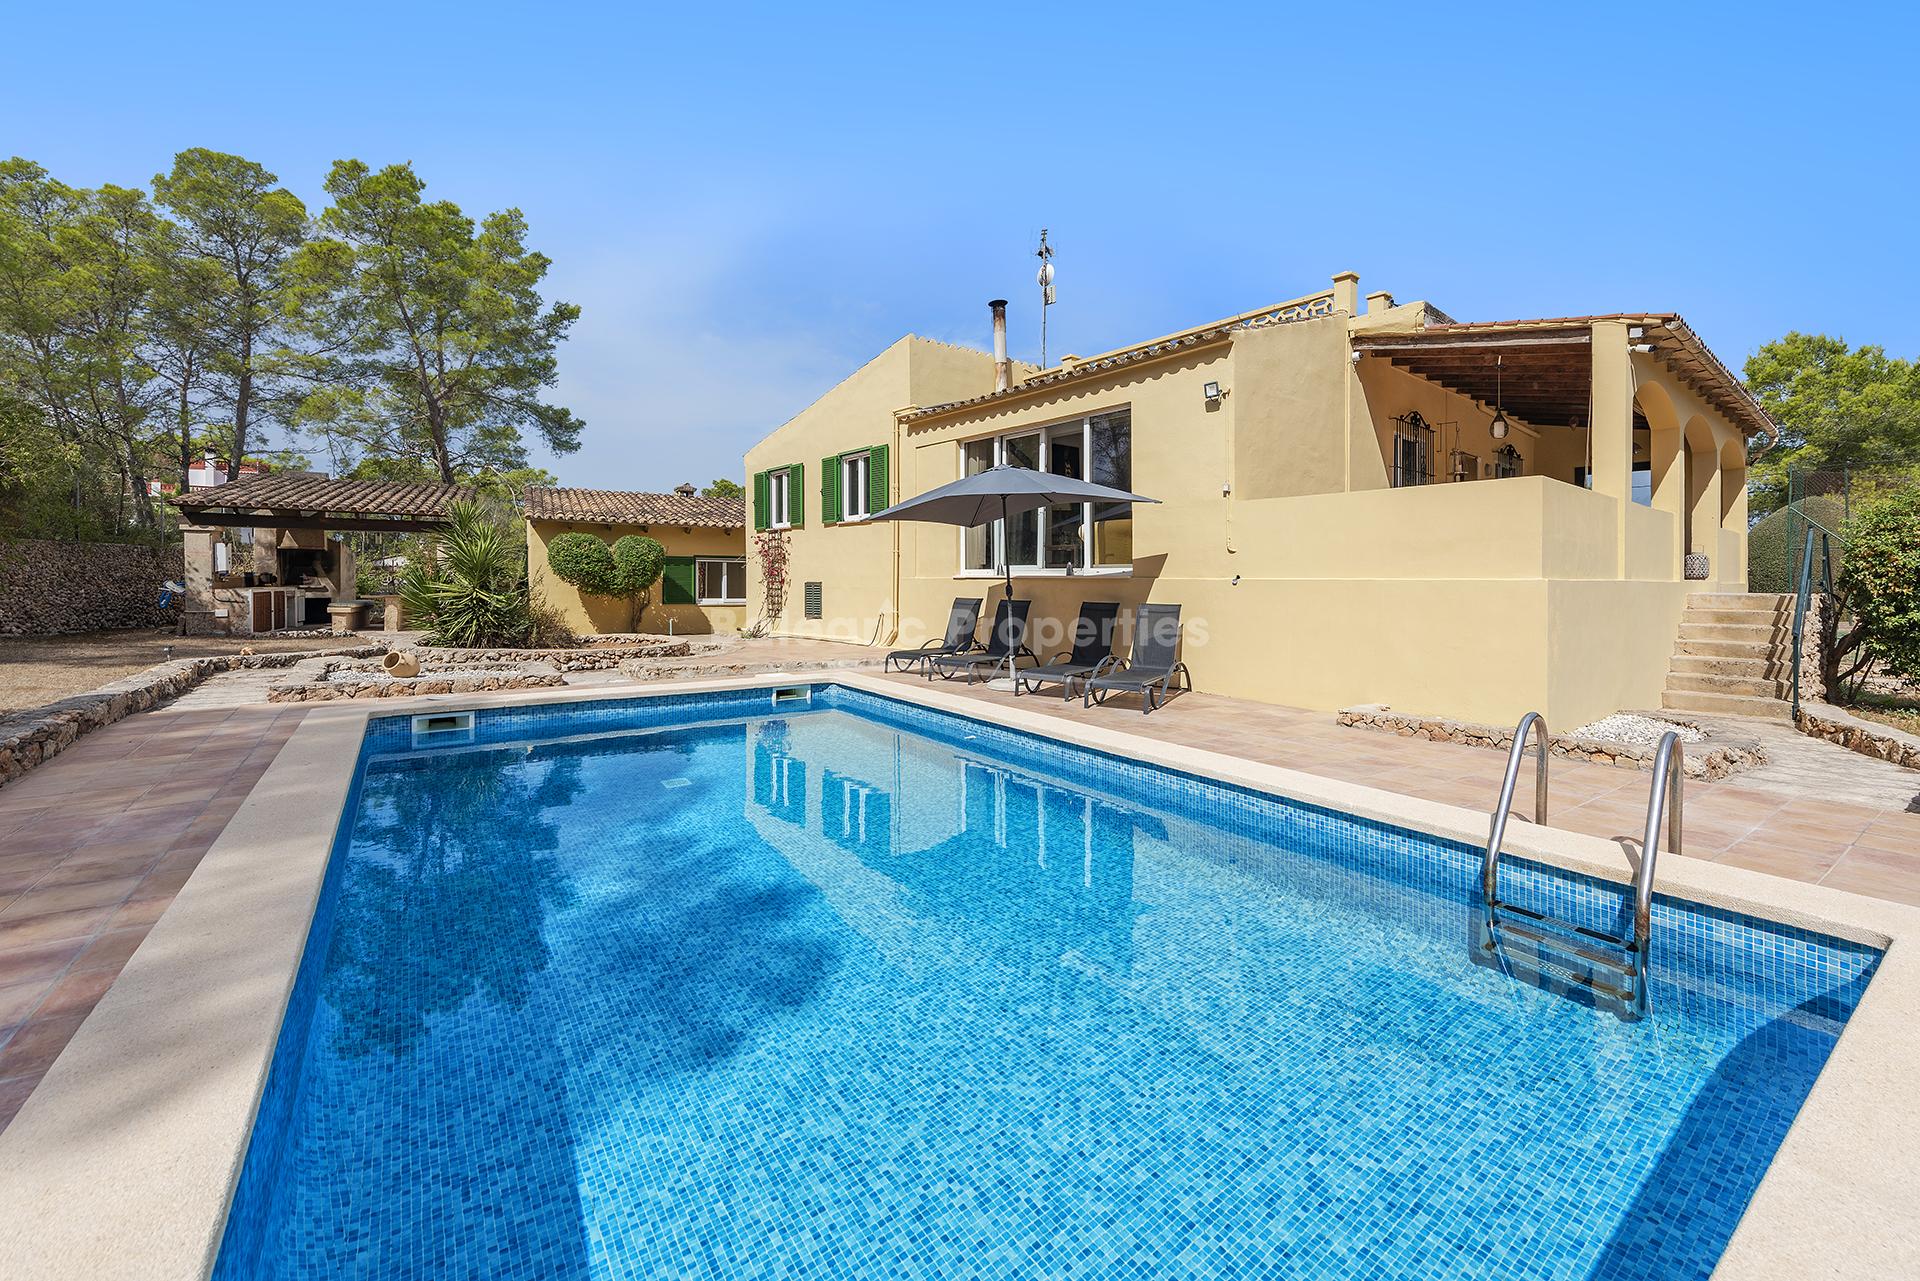 Casa de campo única con pista de tenis y piscina en venta cerca de Algaida, Mallorca